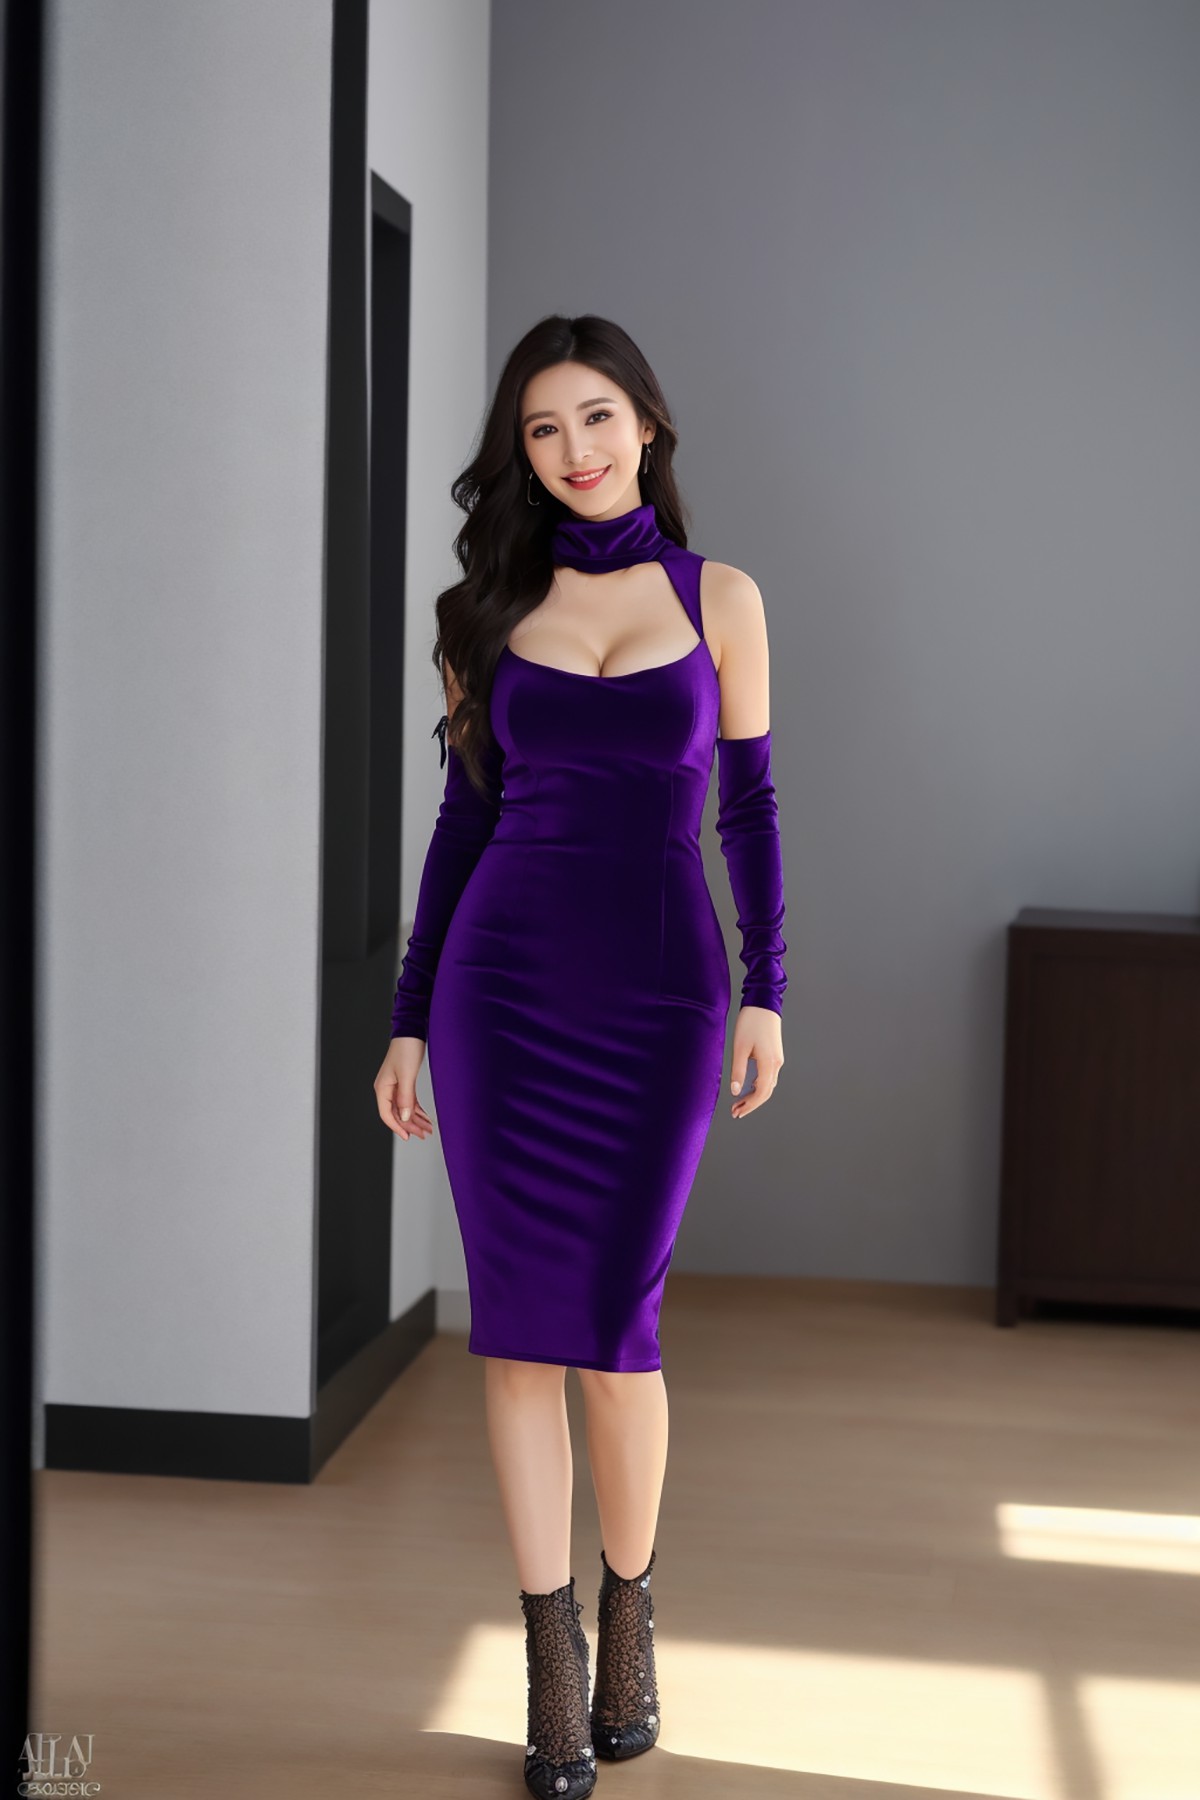 AIModel Vol 149 Purple Dress 0005 2643533490.jpg